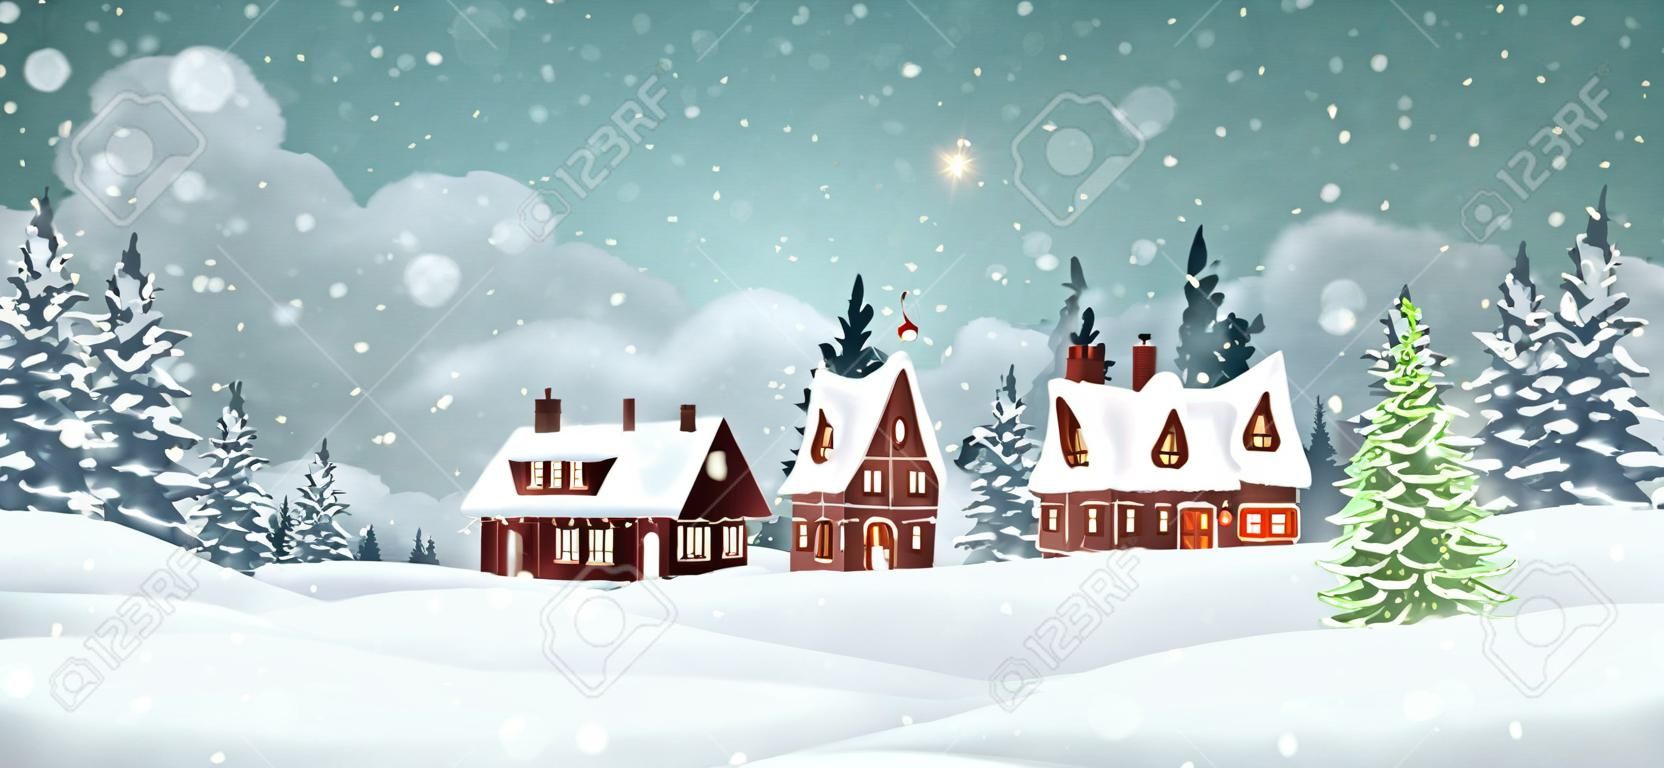 Maisons de village de Noël avec pinède d'hiver. Illustration vectorielle de vacances de Noël